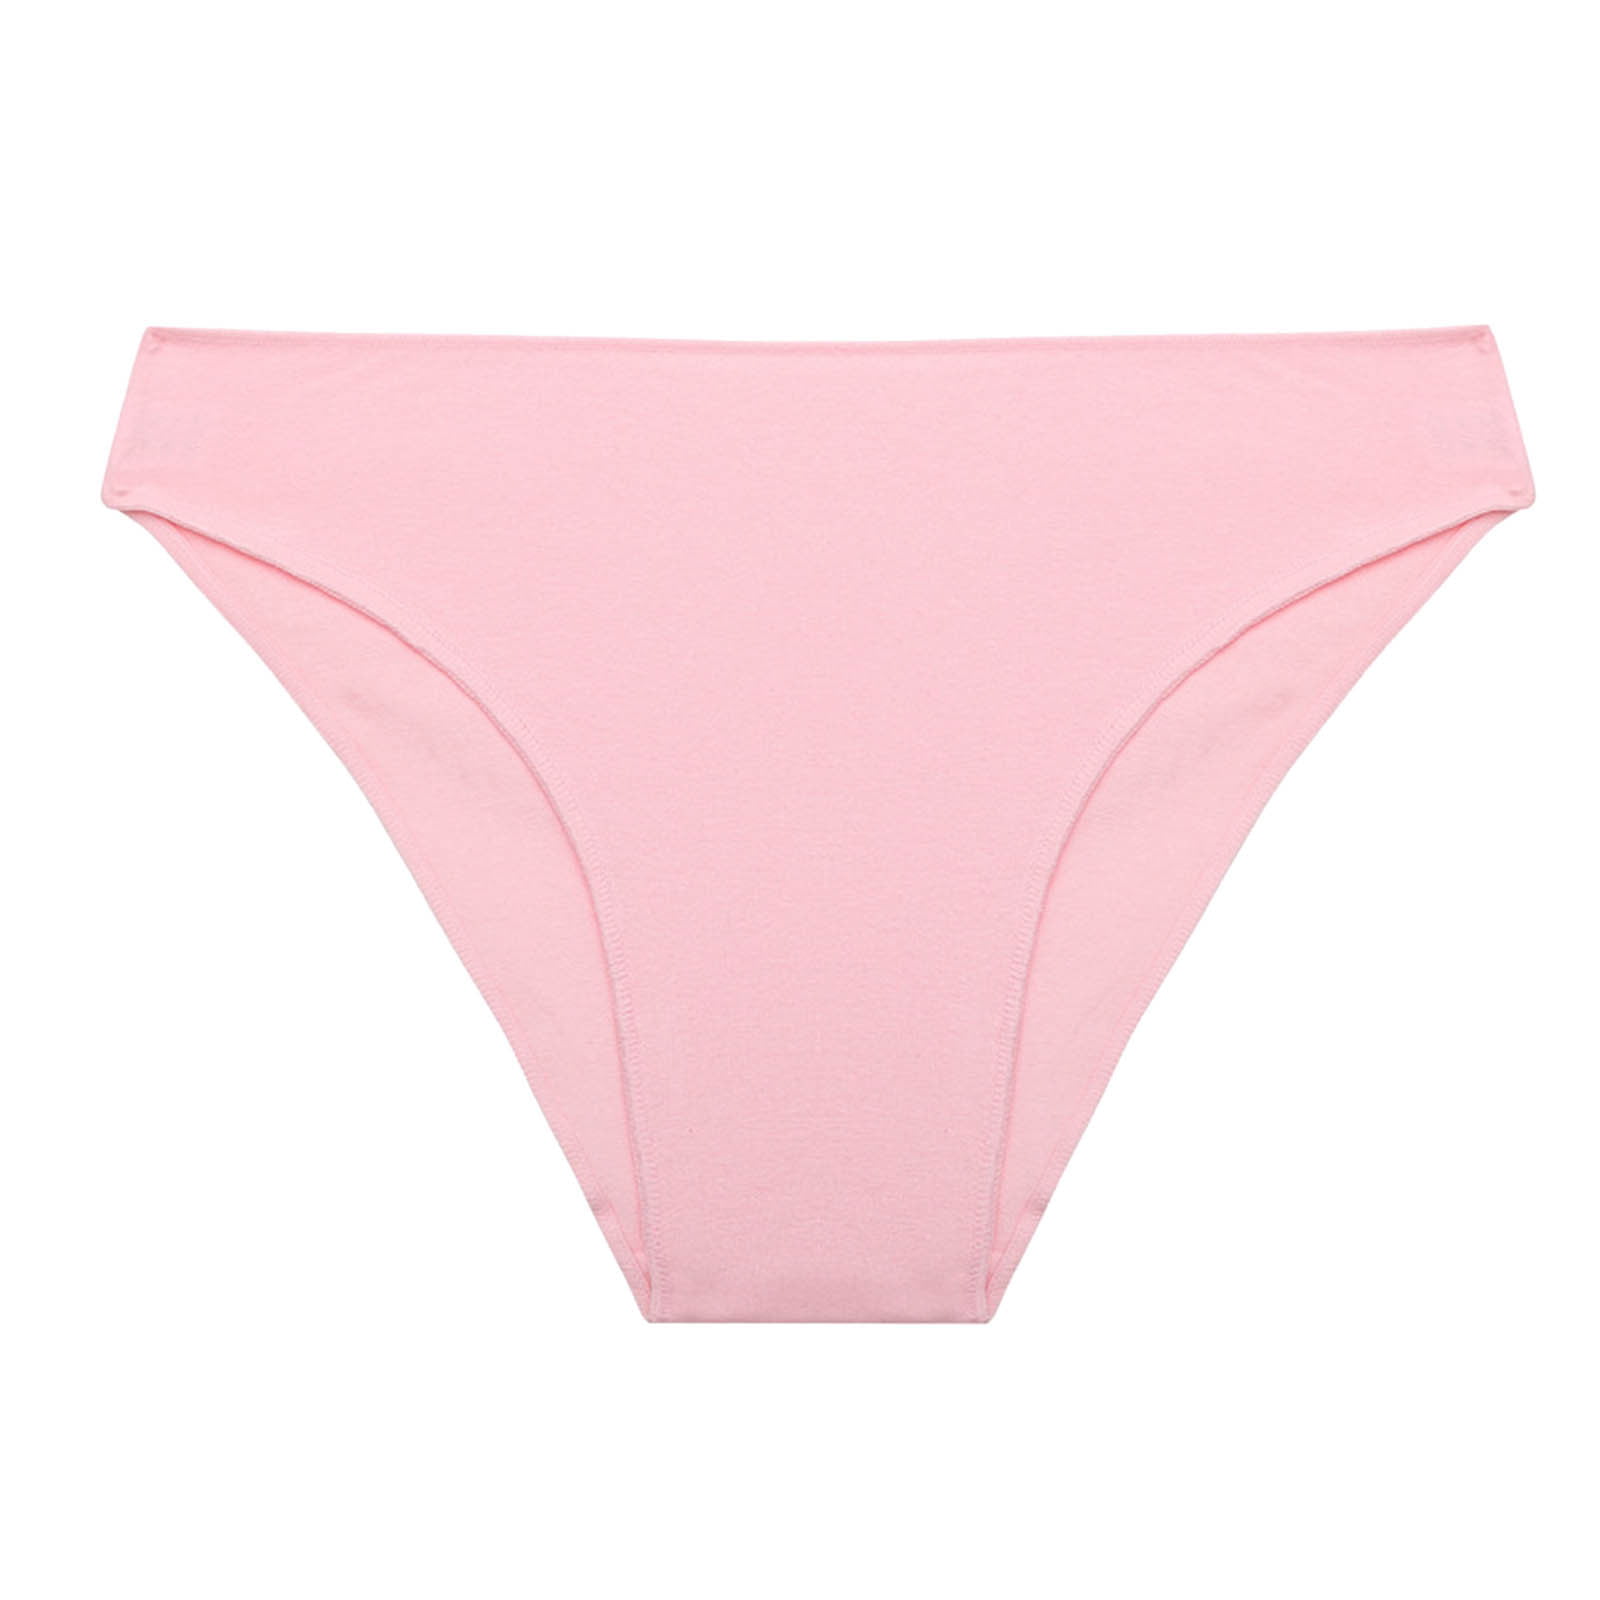 Frehsky underwear women Women Funny Lingerie Briefs Underwear Panties T  string Thongs Knickers Pink 